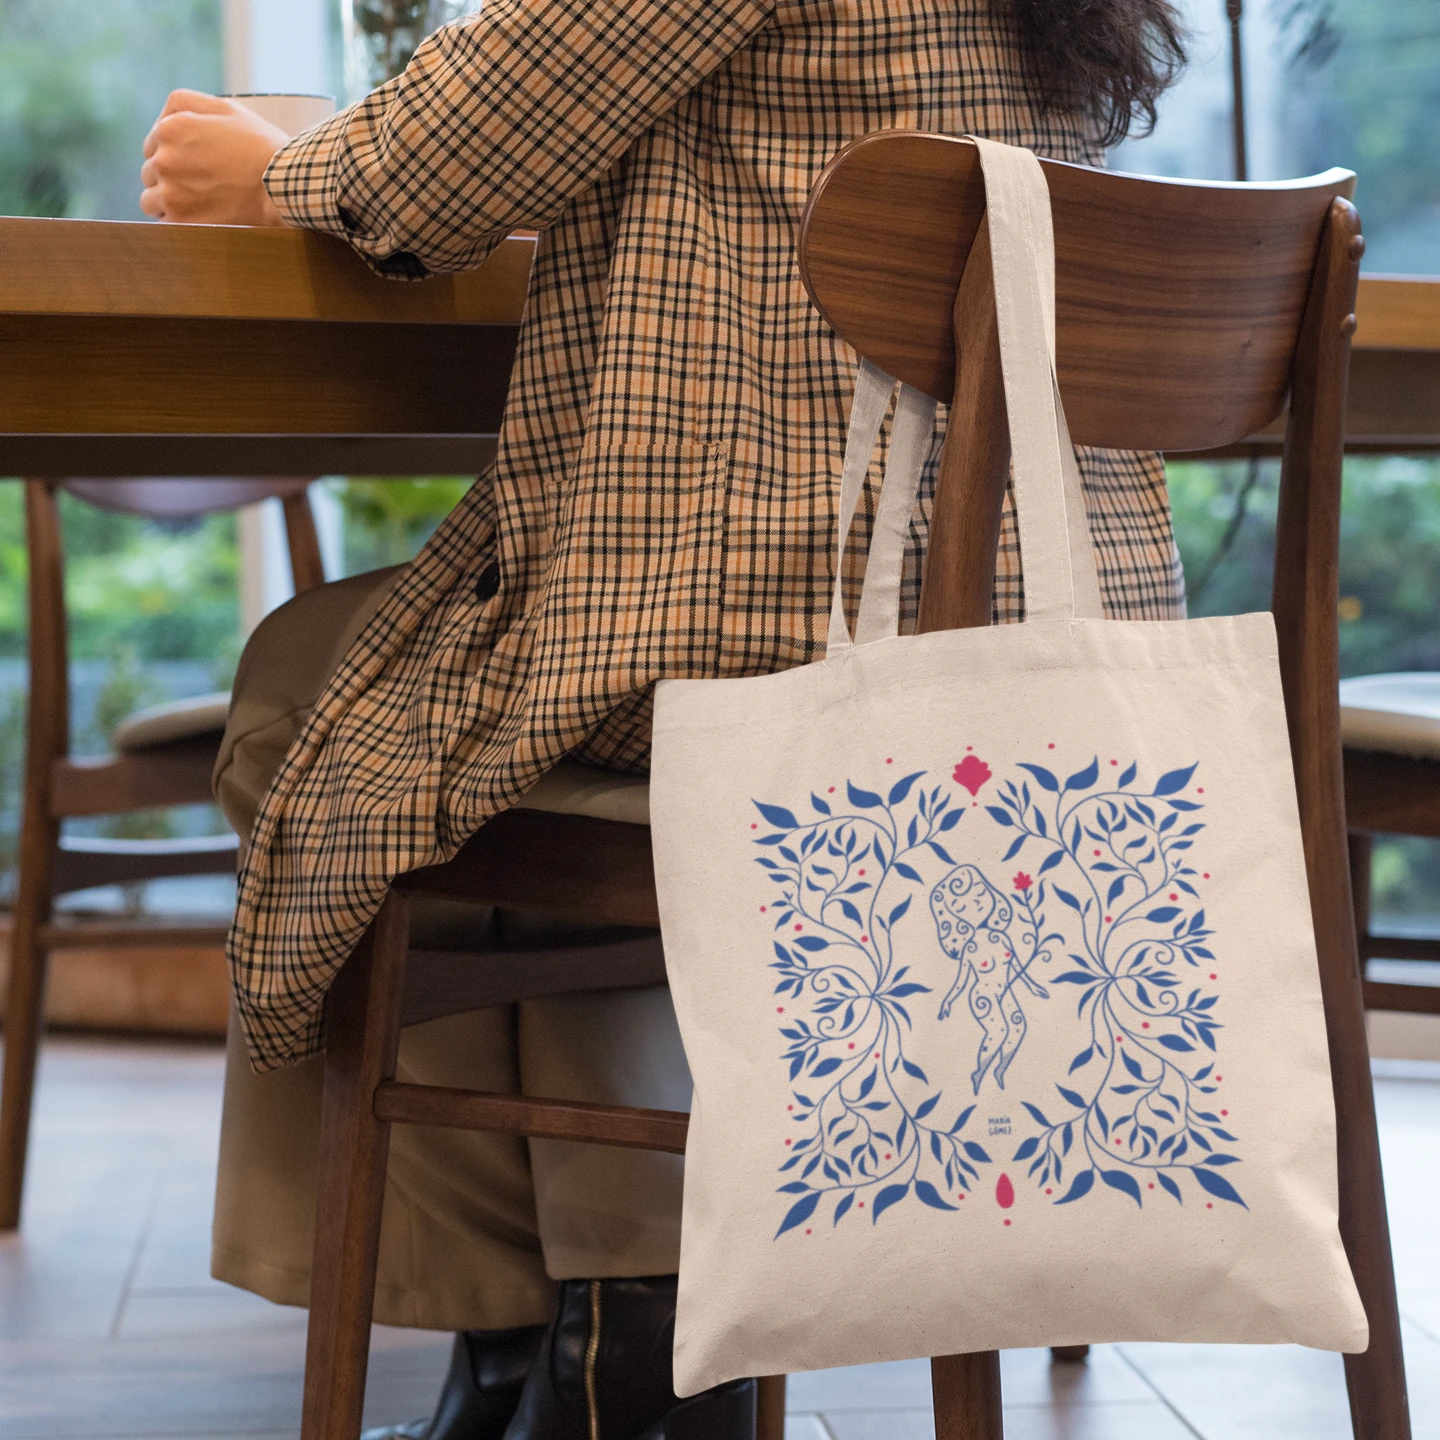 Mujer en una silla de madera tomando café con la bolsa de tela con una mujer flotando entre flores azules de María Gómez 